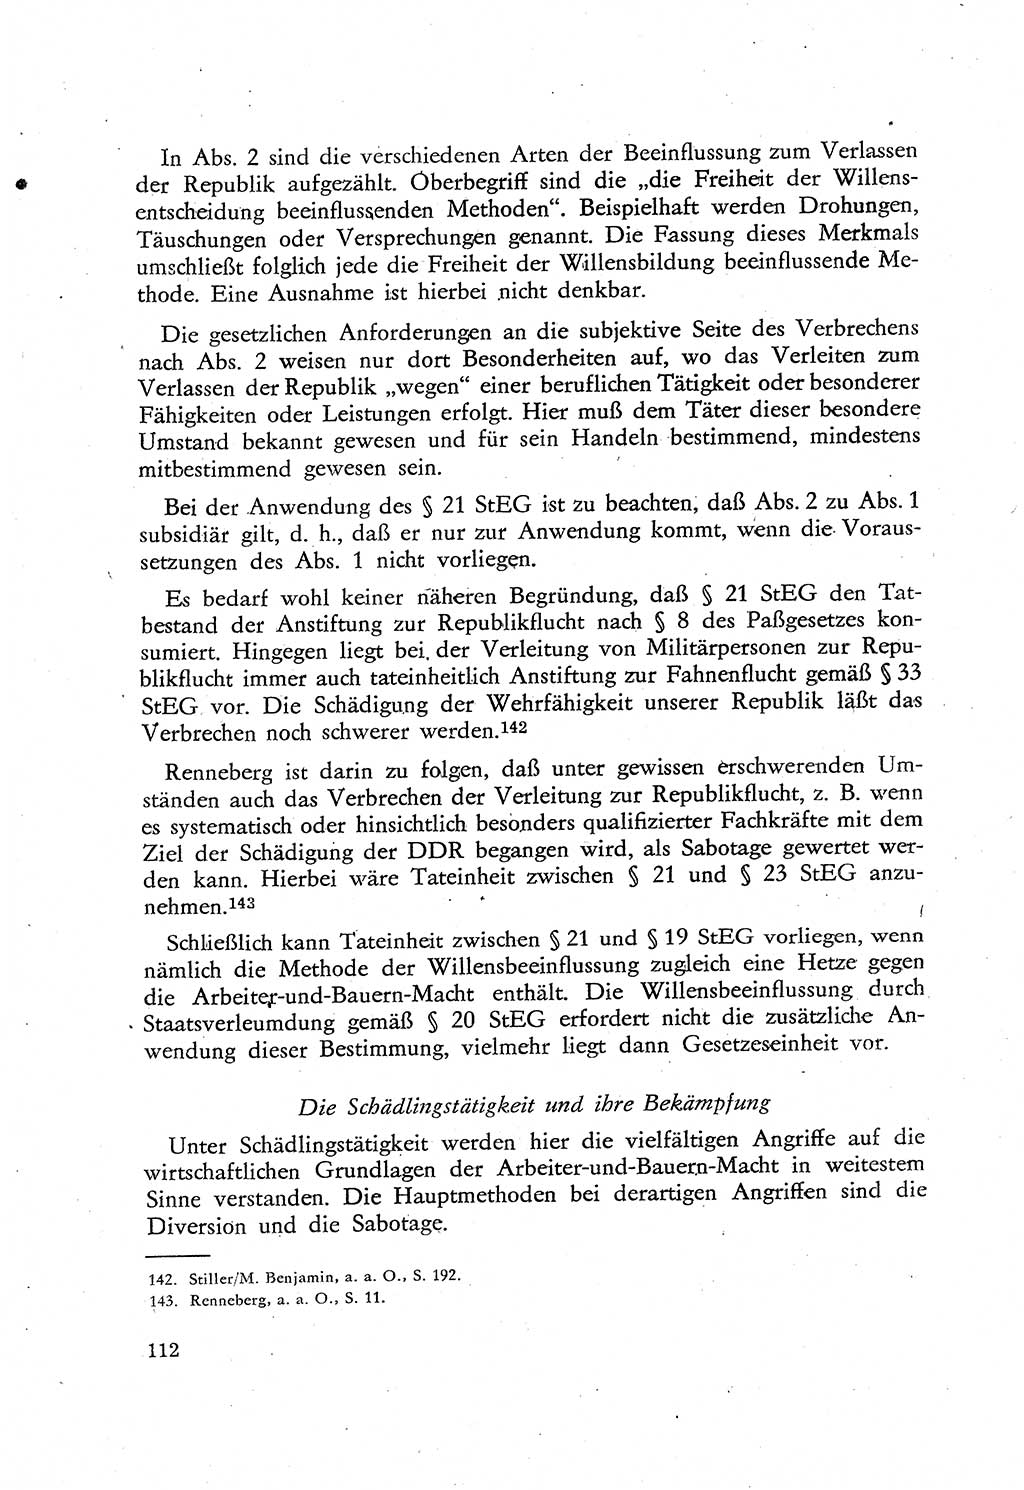 Beiträge zum Strafrecht [Deutsche Demokratische Republik (DDR)], Staatsverbrechen 1959, Seite 112 (Beitr. Strafr. DDR St.-Verbr. 1959, S. 112)